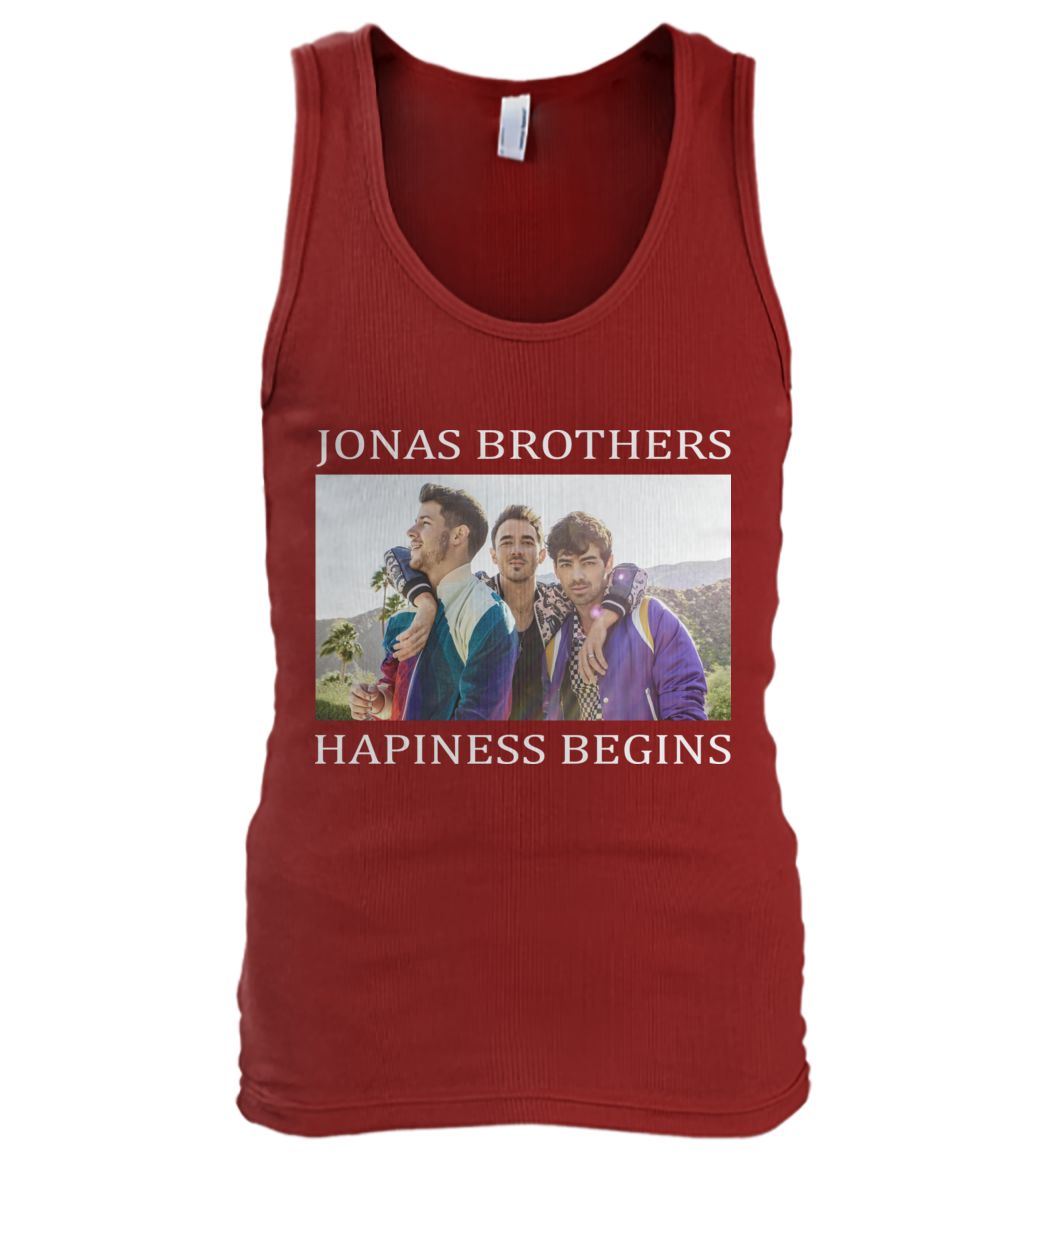 Jonas brothers happiness begins men's tank top